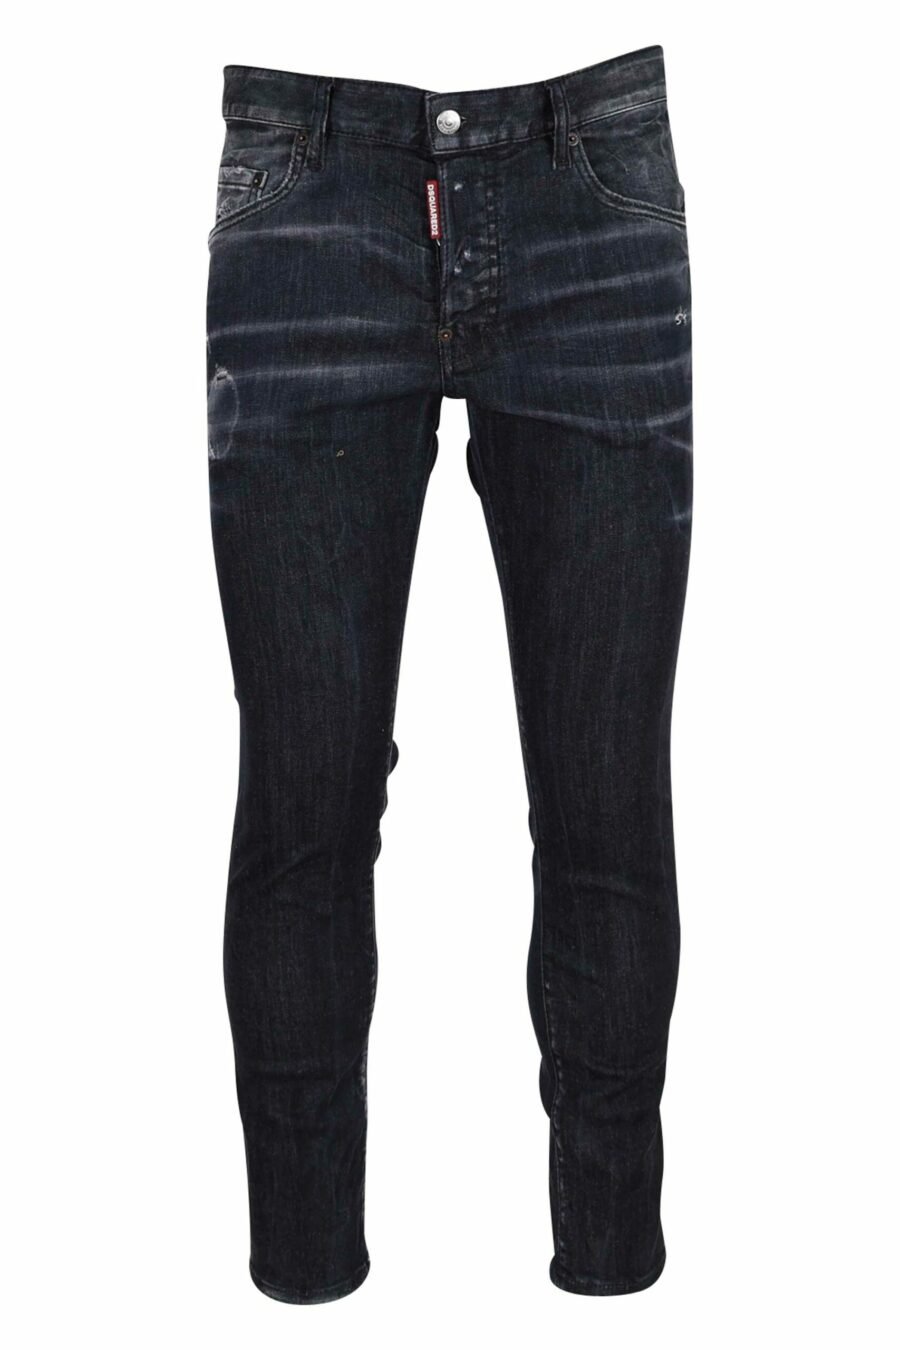 Black semi-worn "skater jean" jeans - 8054148289591 scaled